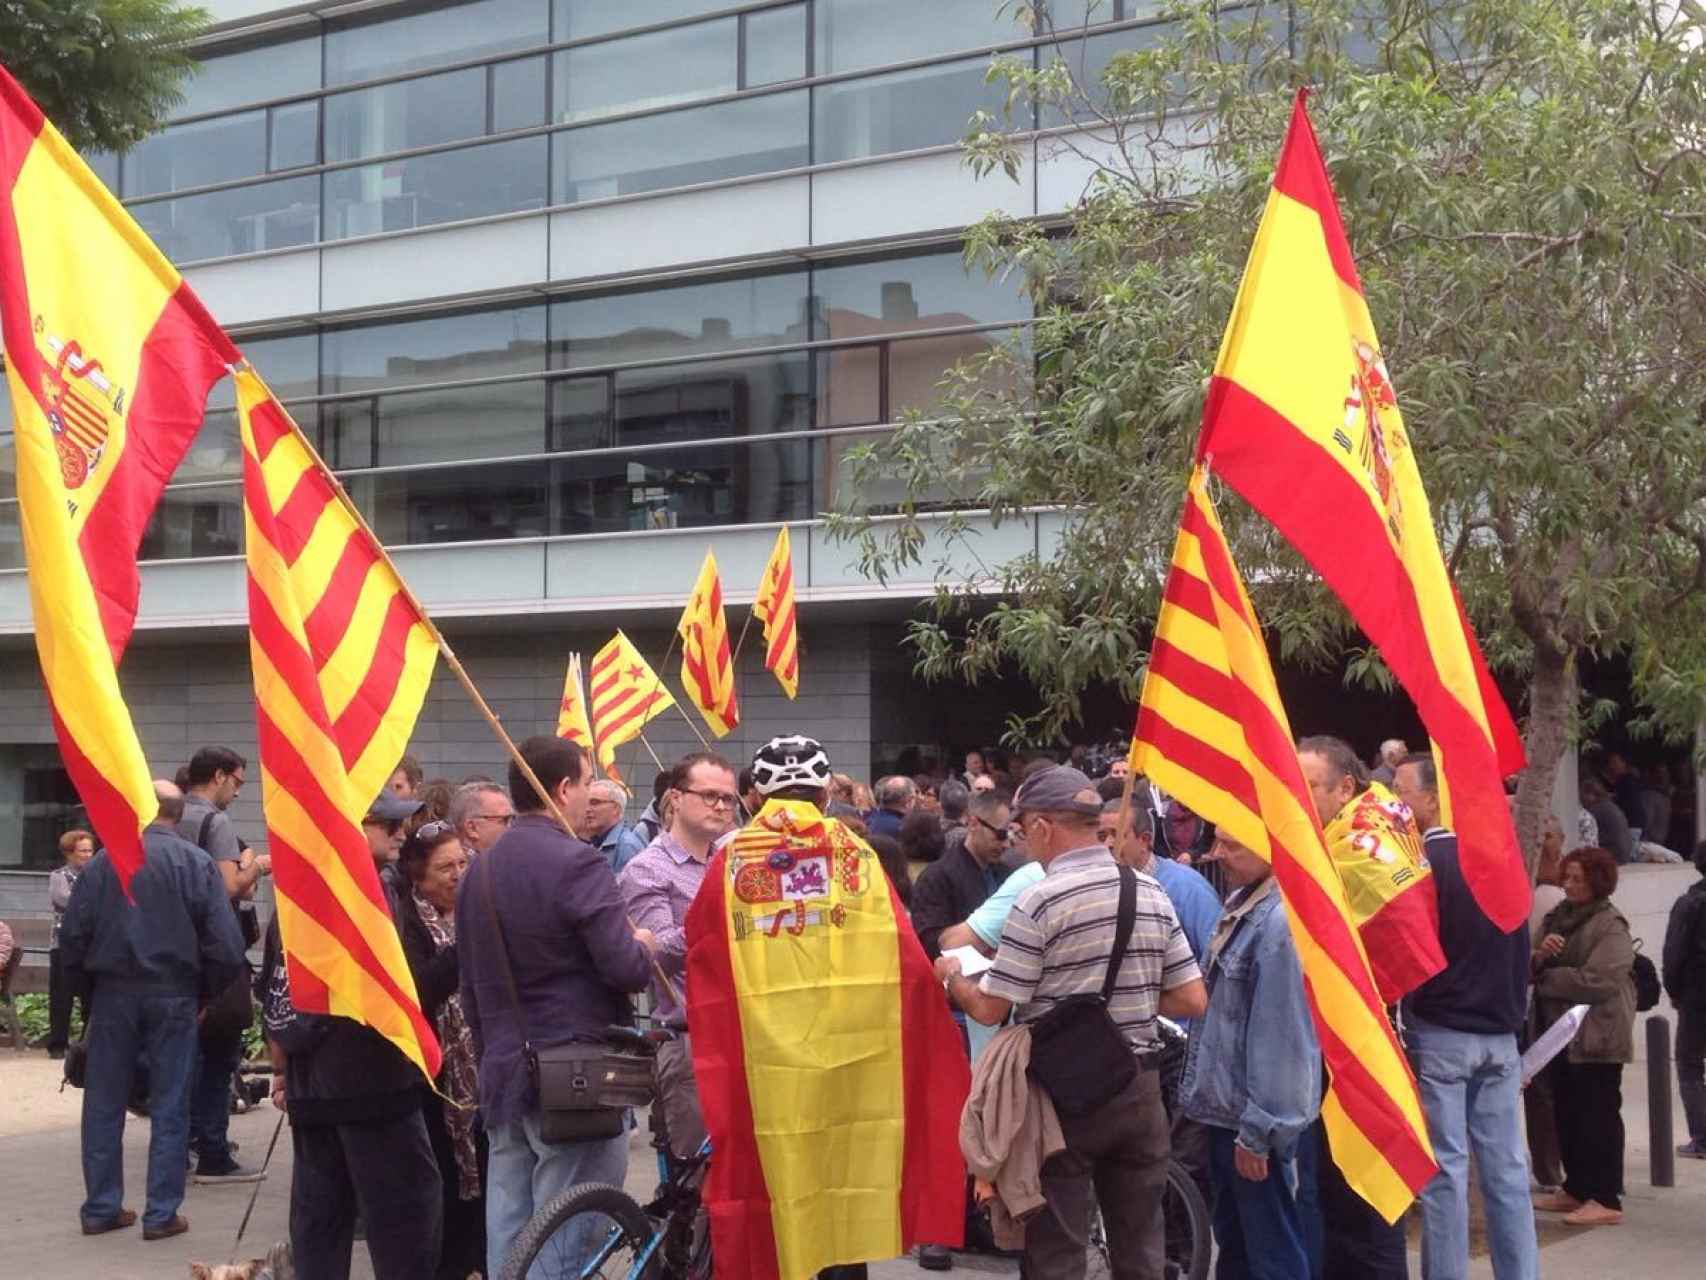 Momentos de tensión vivida a las puertas del Ayuntamiento de Badalona